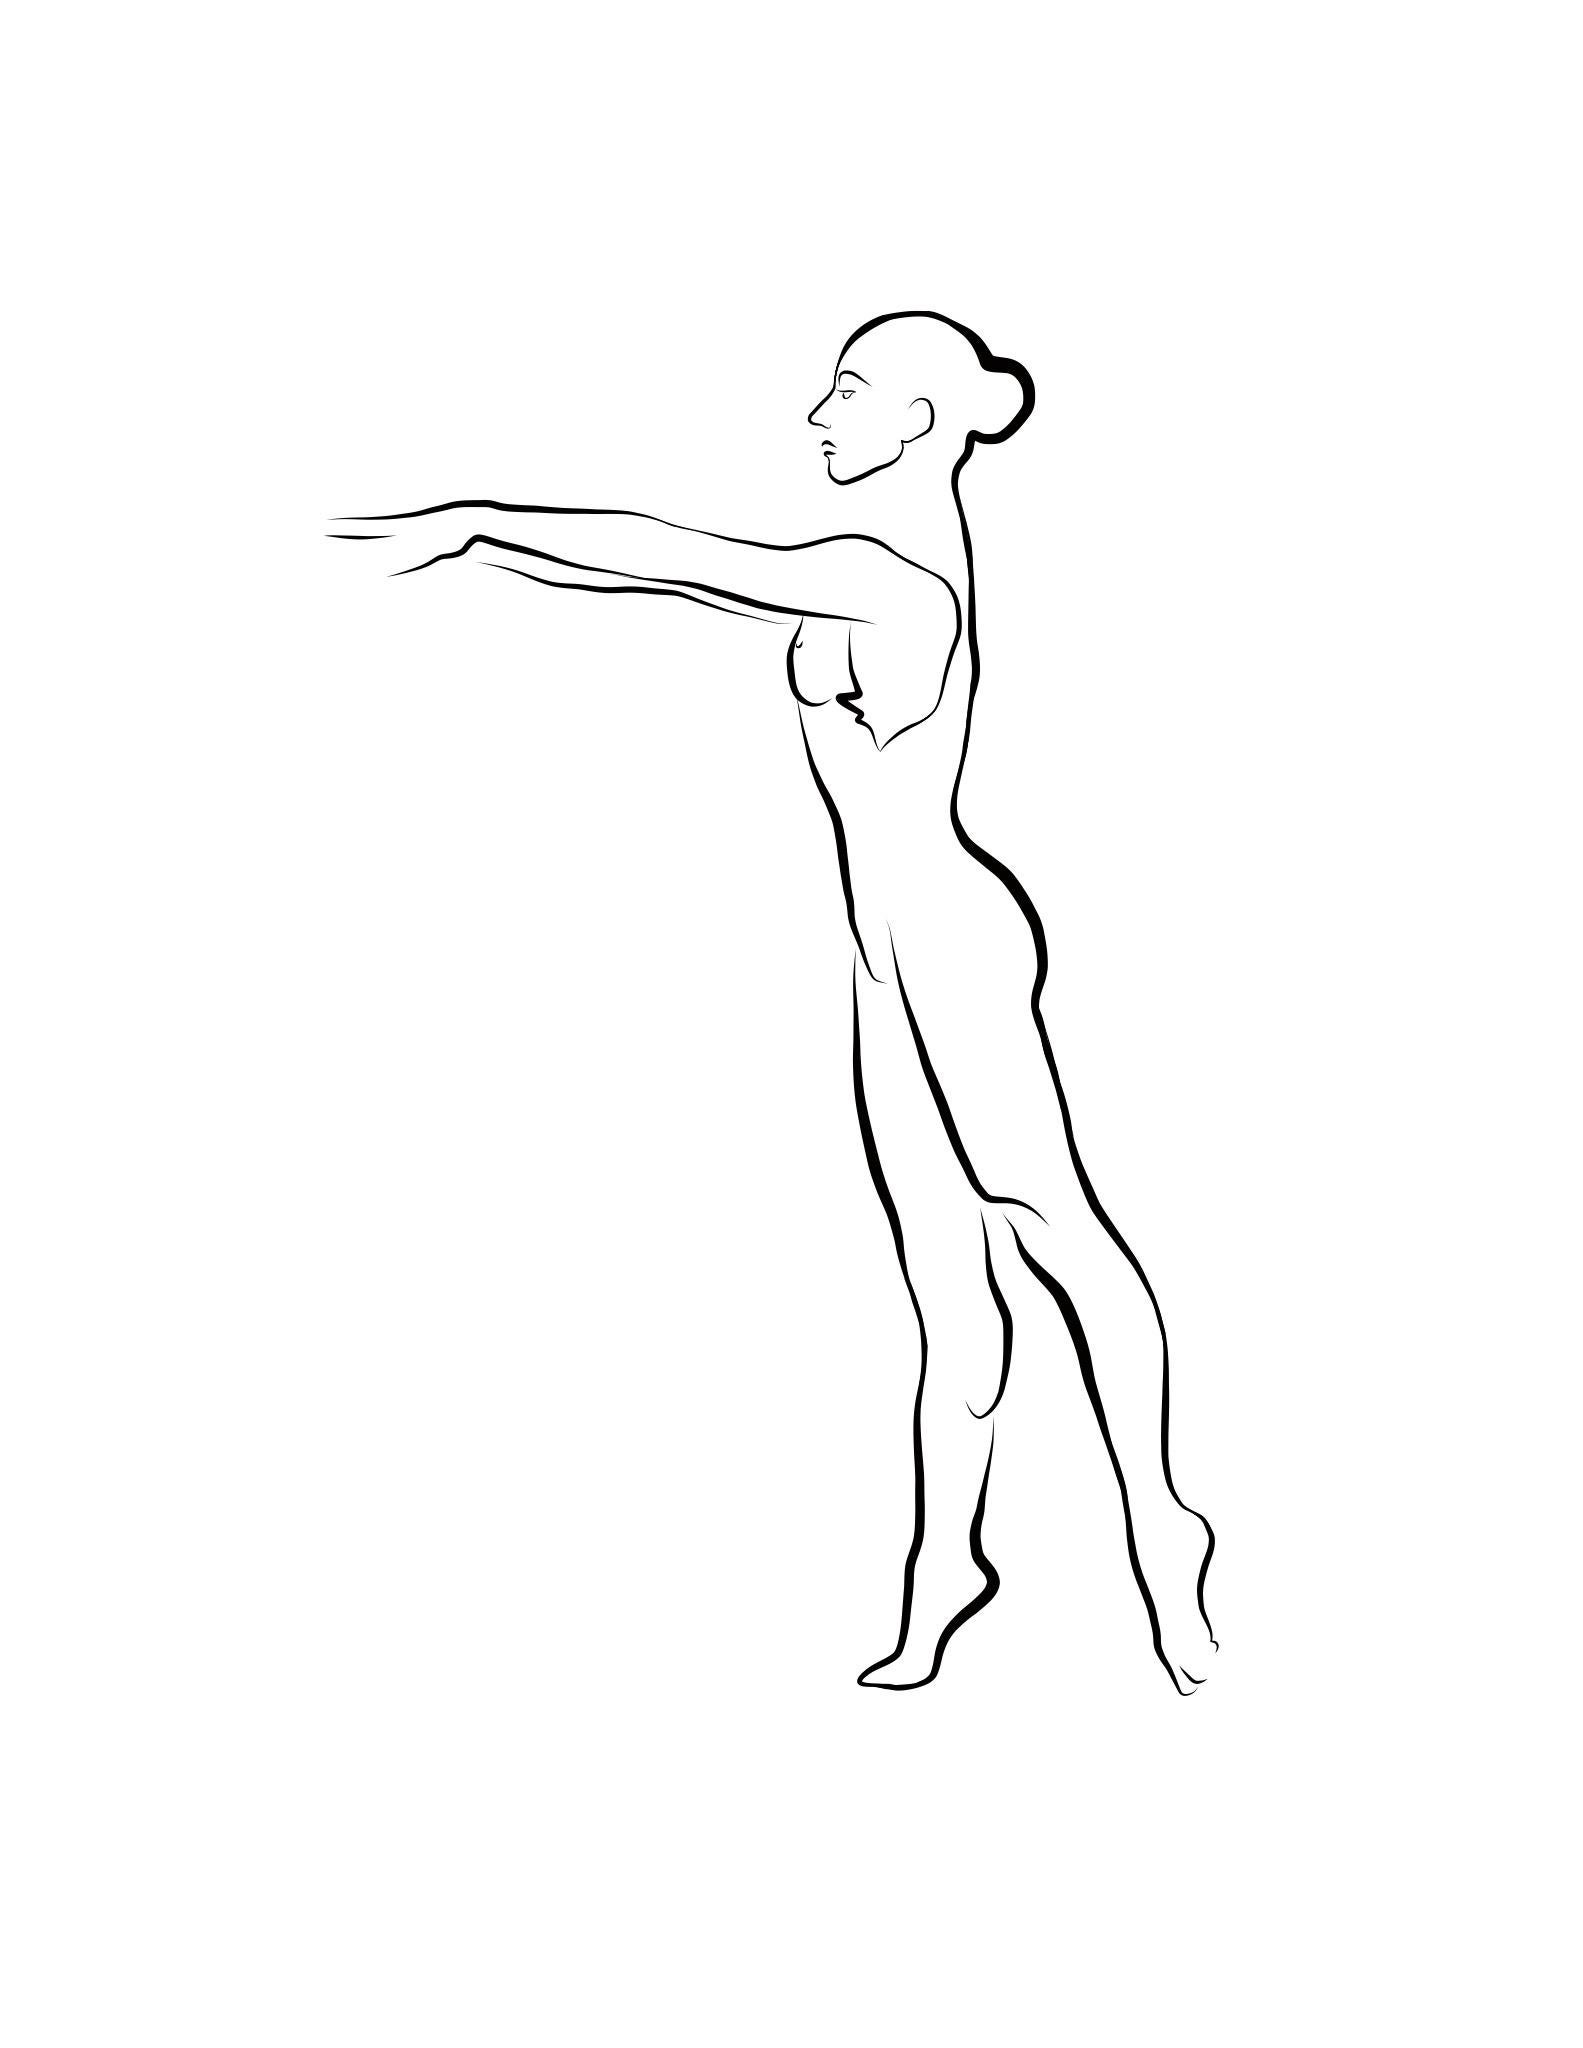 Michael Binkley Nude Print - Haiku #61, 1/50 - Digital Vector Drawing B&W Female Nude Standing Tiptoe